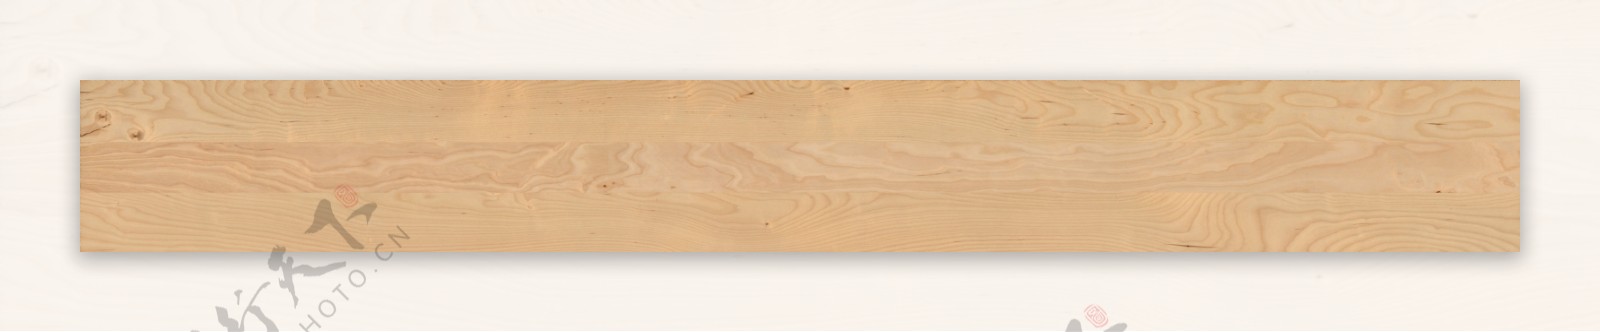 木纹木纹理木地板木纹贴图地面木纹